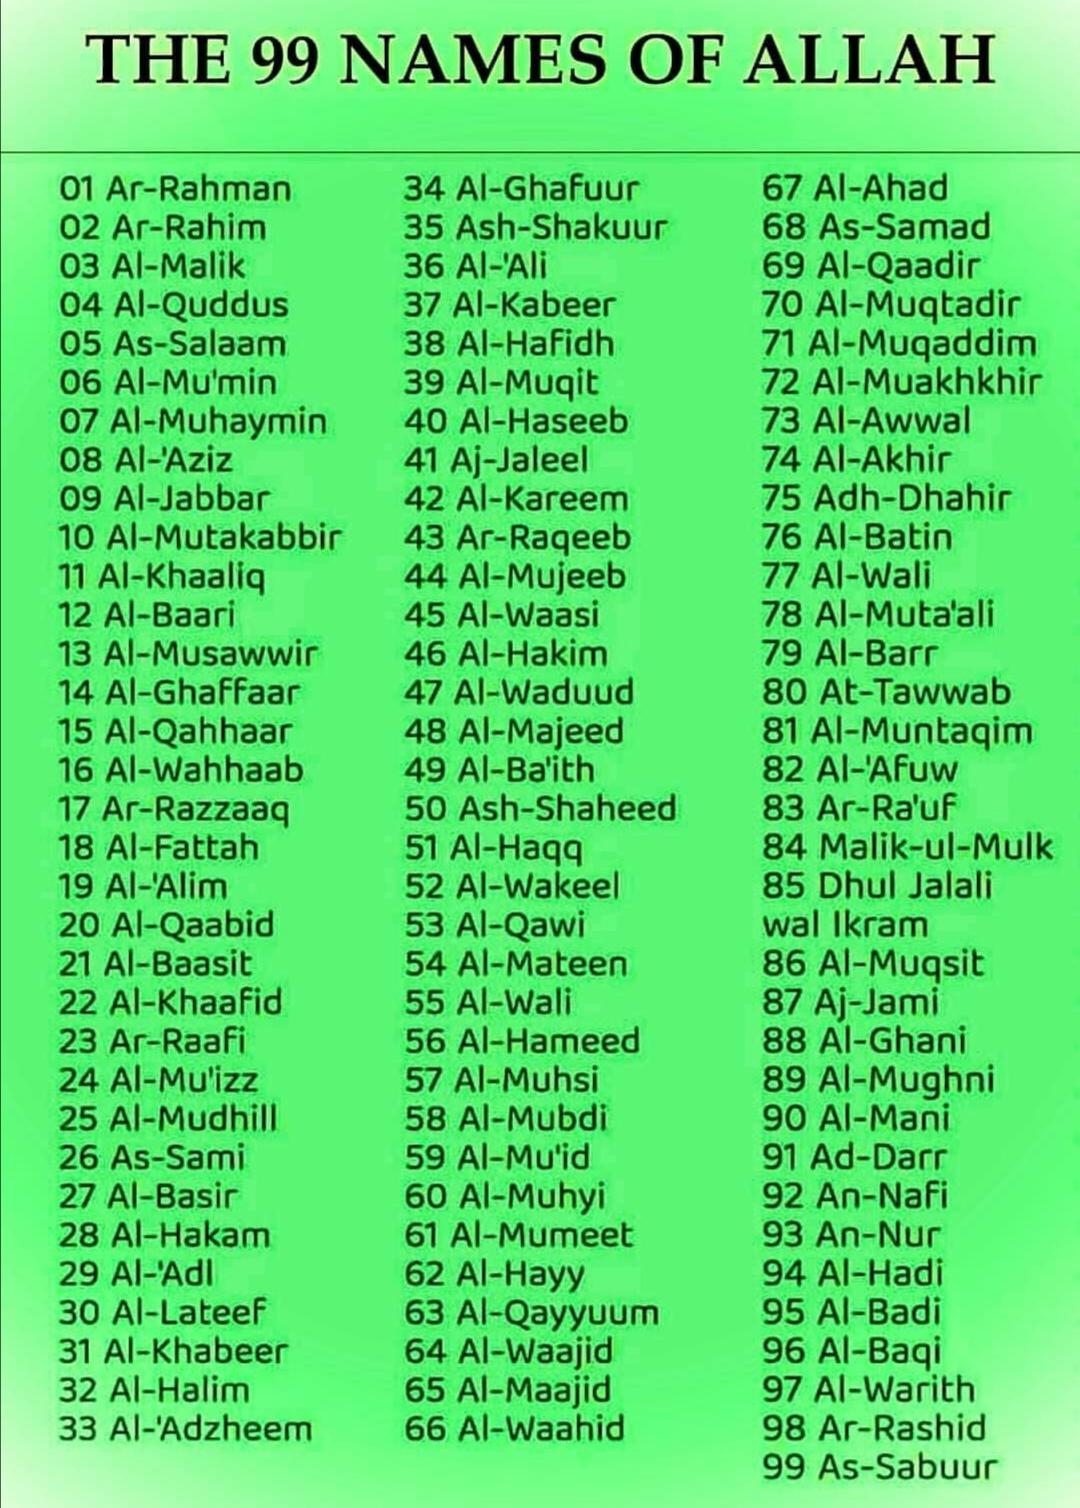 allah ke 99 names in english